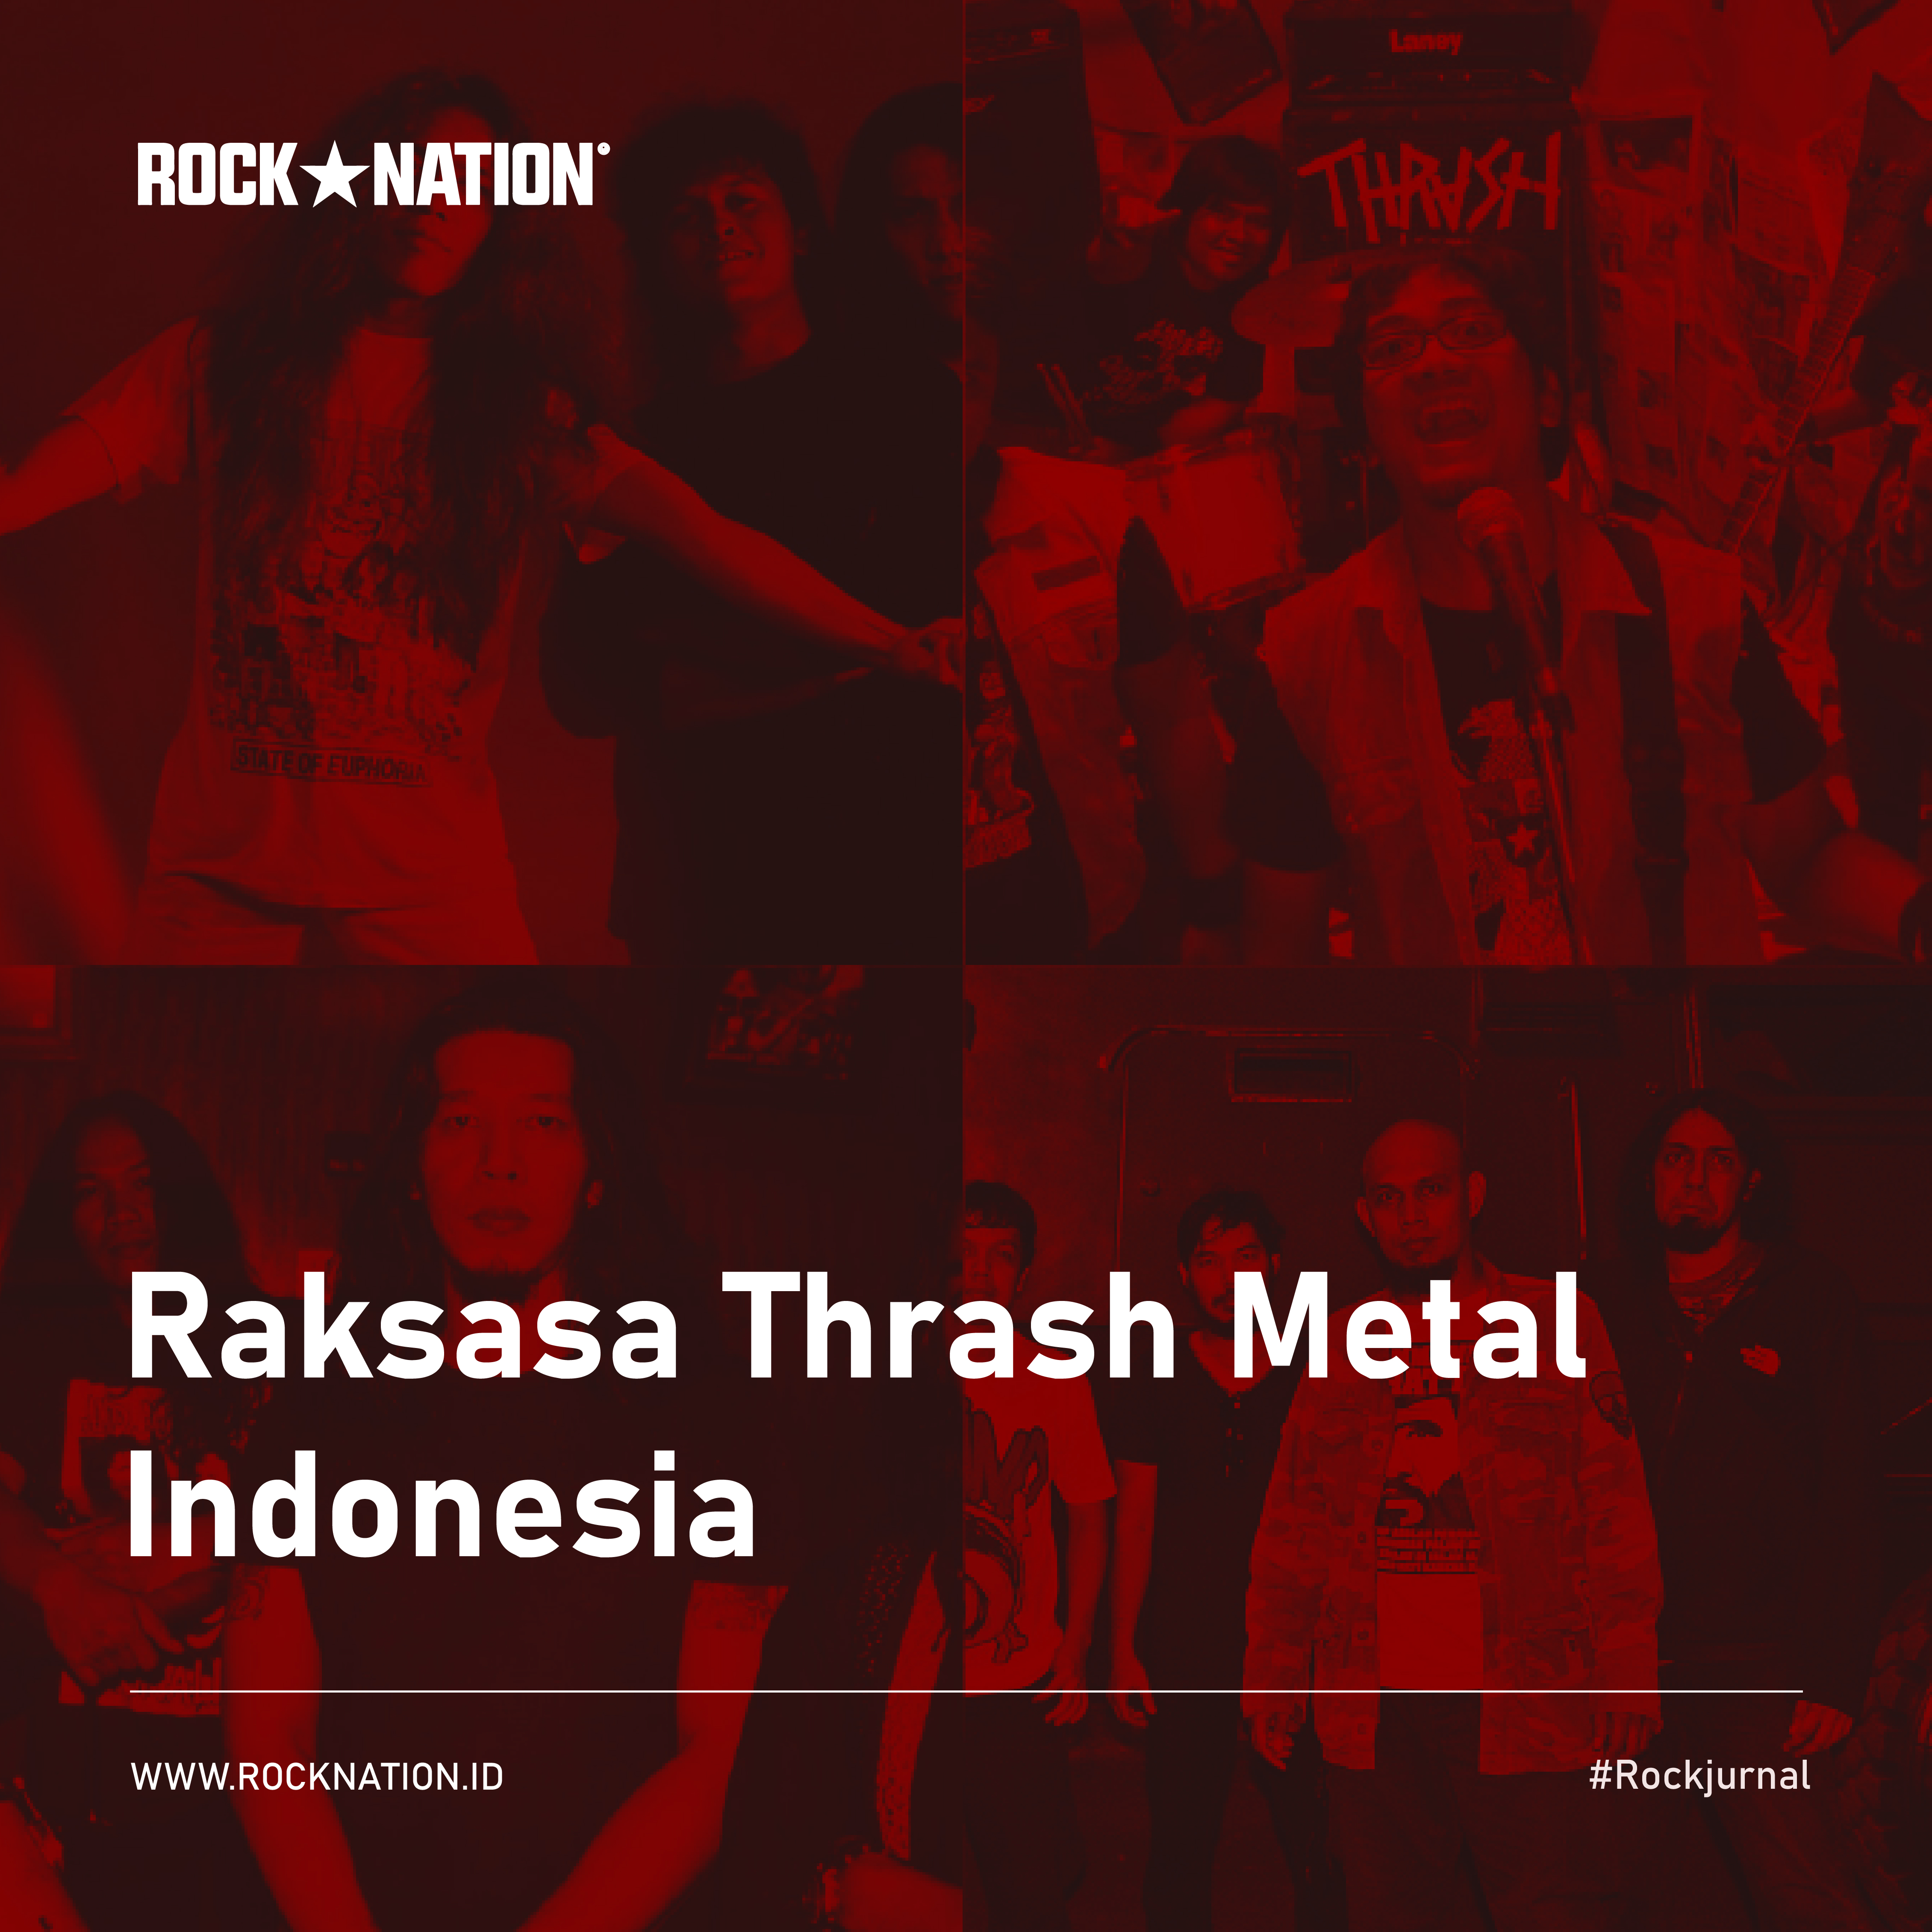 Raksasa Thrash Metal Indonesia image